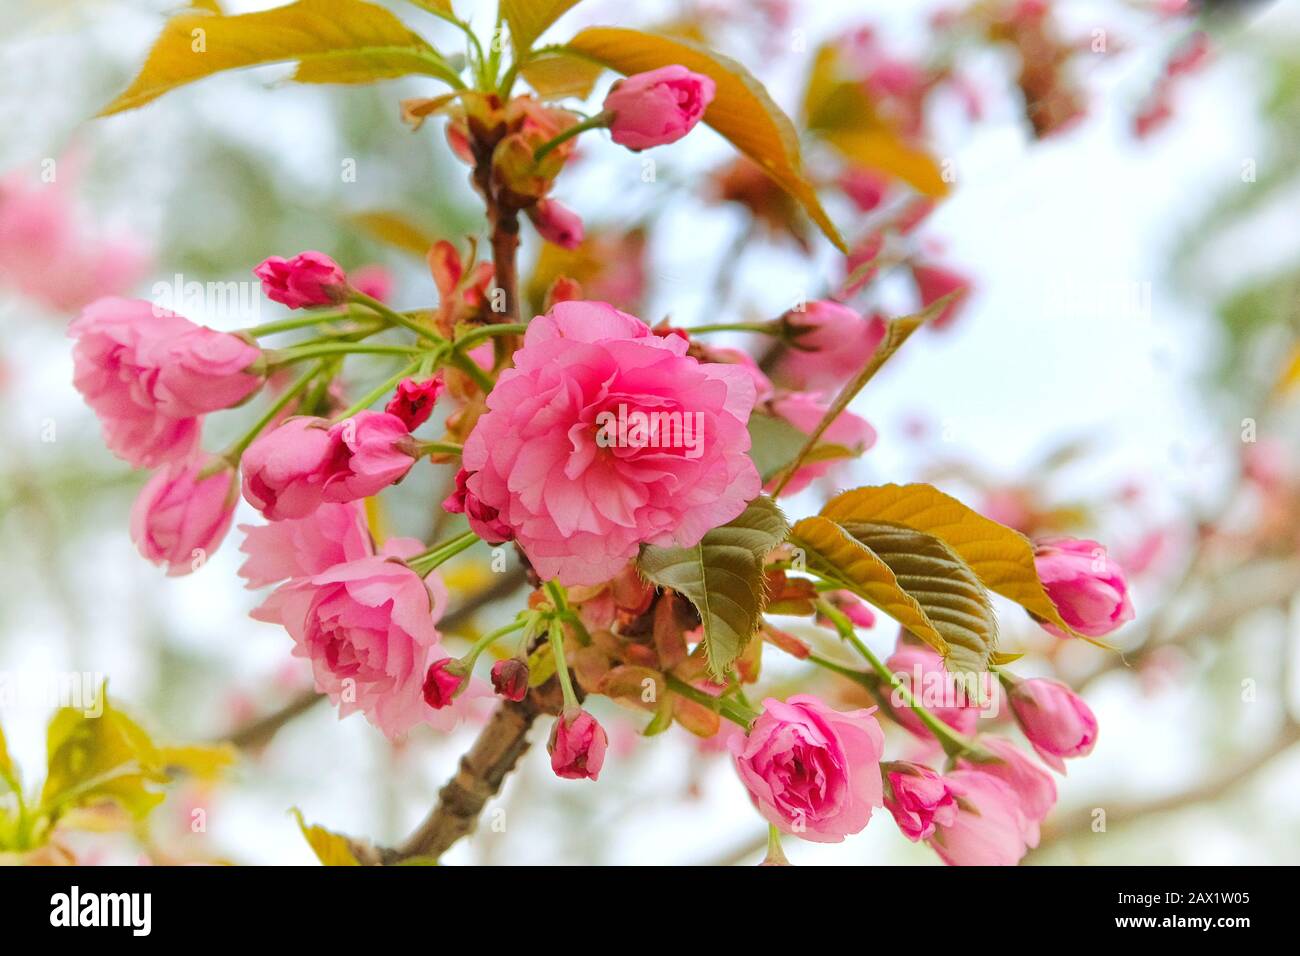 Sakura è in fiore nel parco cittadino, vicino. I fiori rosa delicati stanno crescendo in Giappone. Architettura paesaggistica e decorazione nella stagione primaverile. Foto Stock